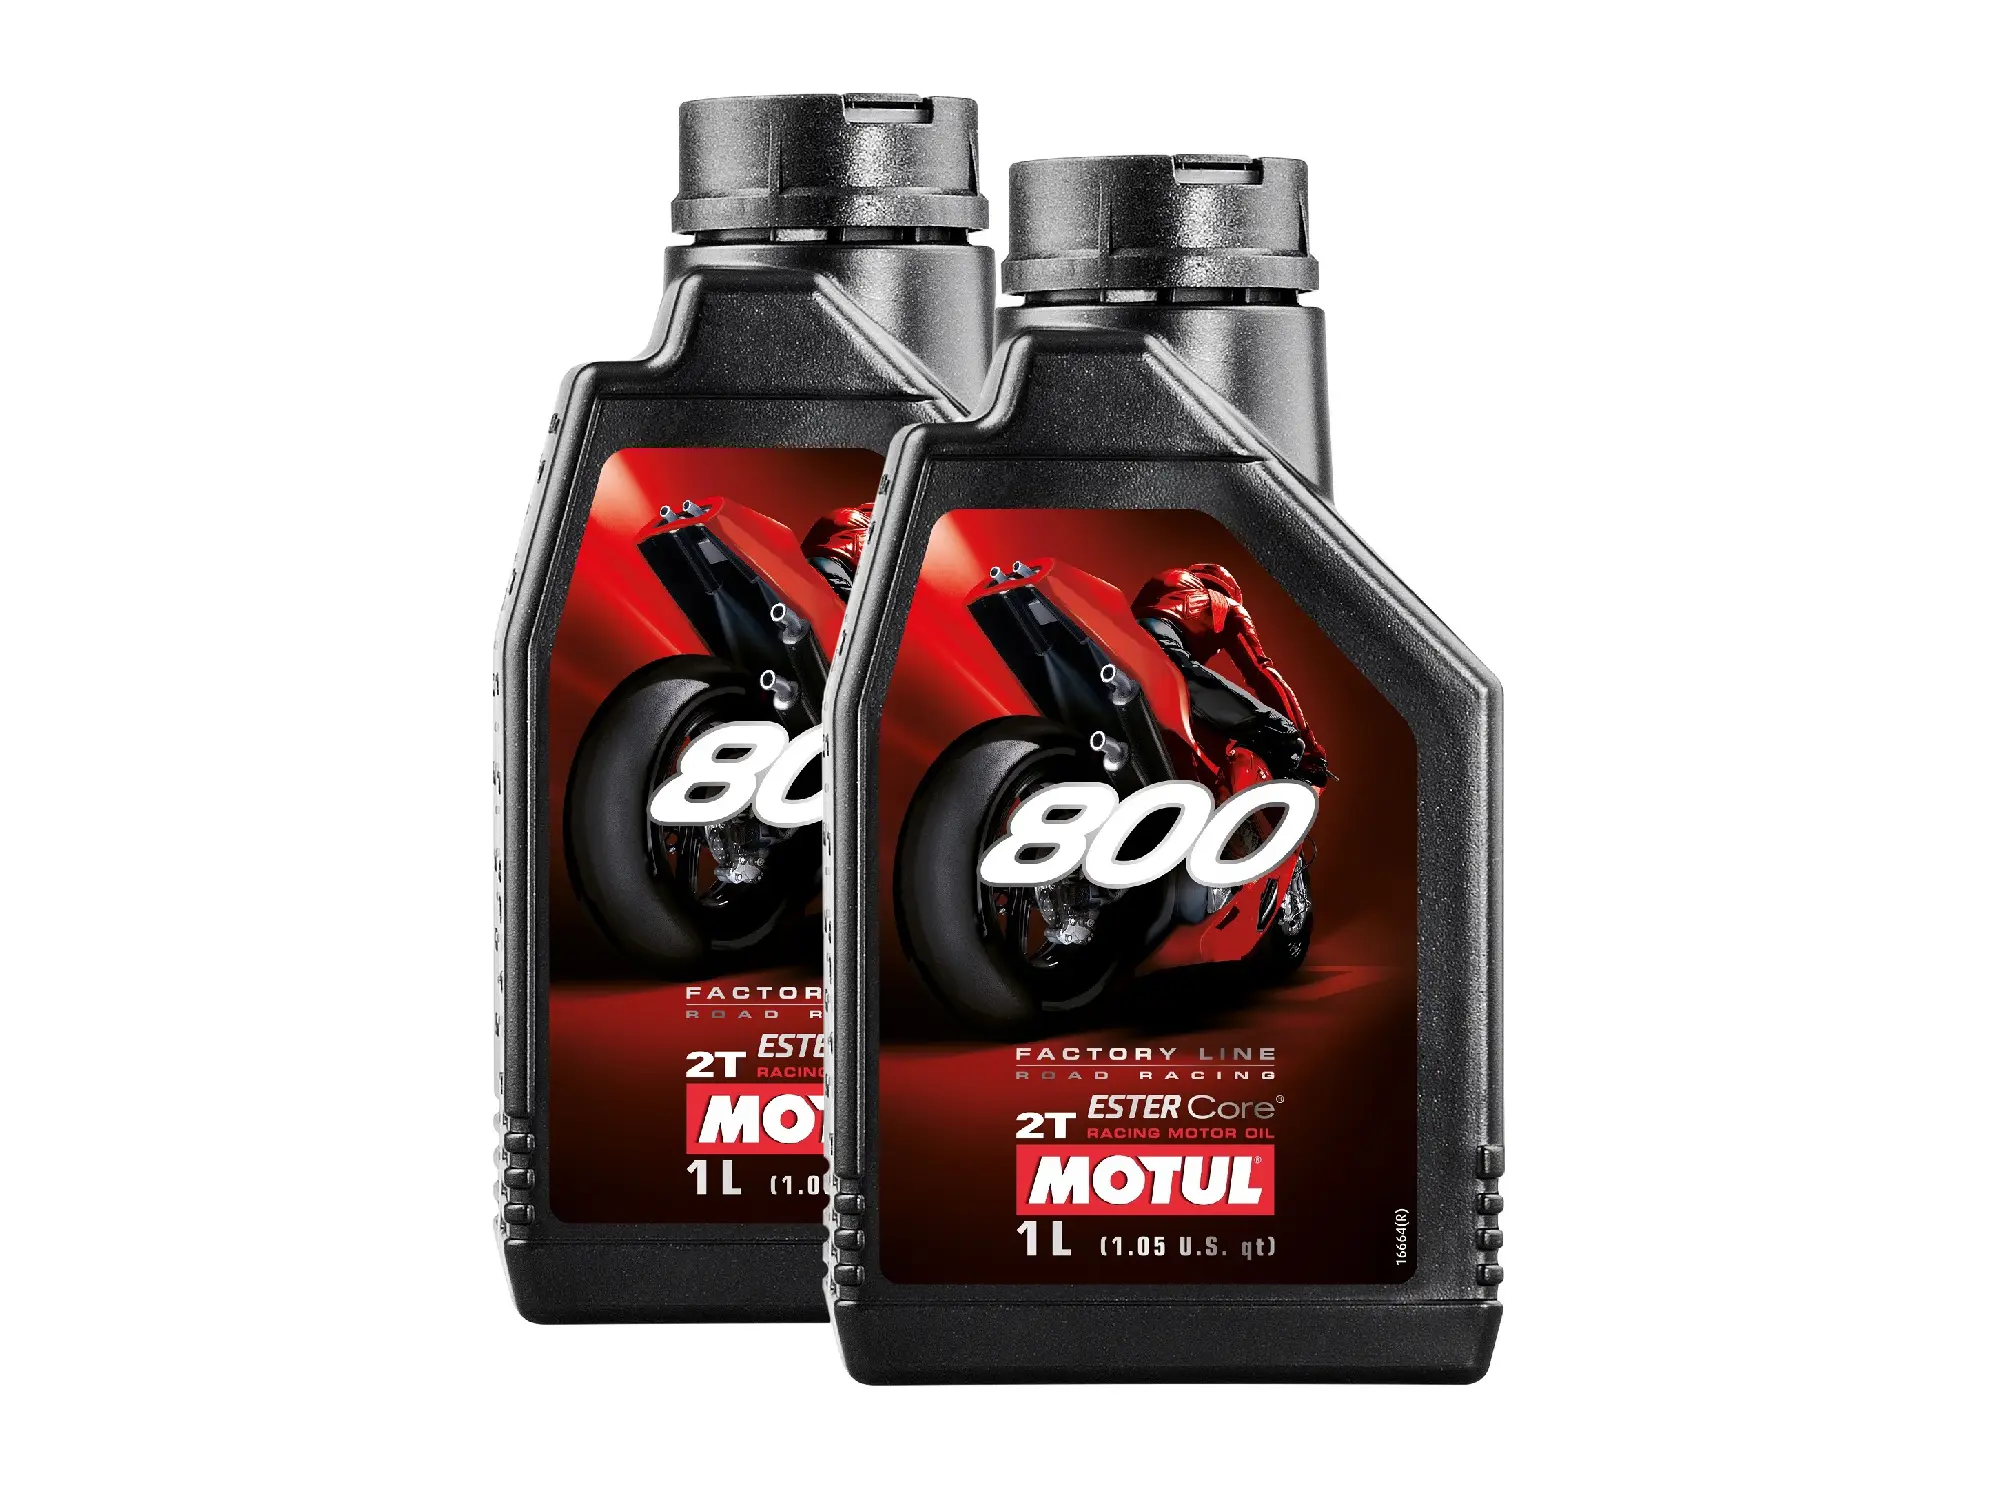 Set: 2x MOTUL 800 Motoröl 2T Road Racing - 1 Liter, Item no: GP10000831 - Image 1